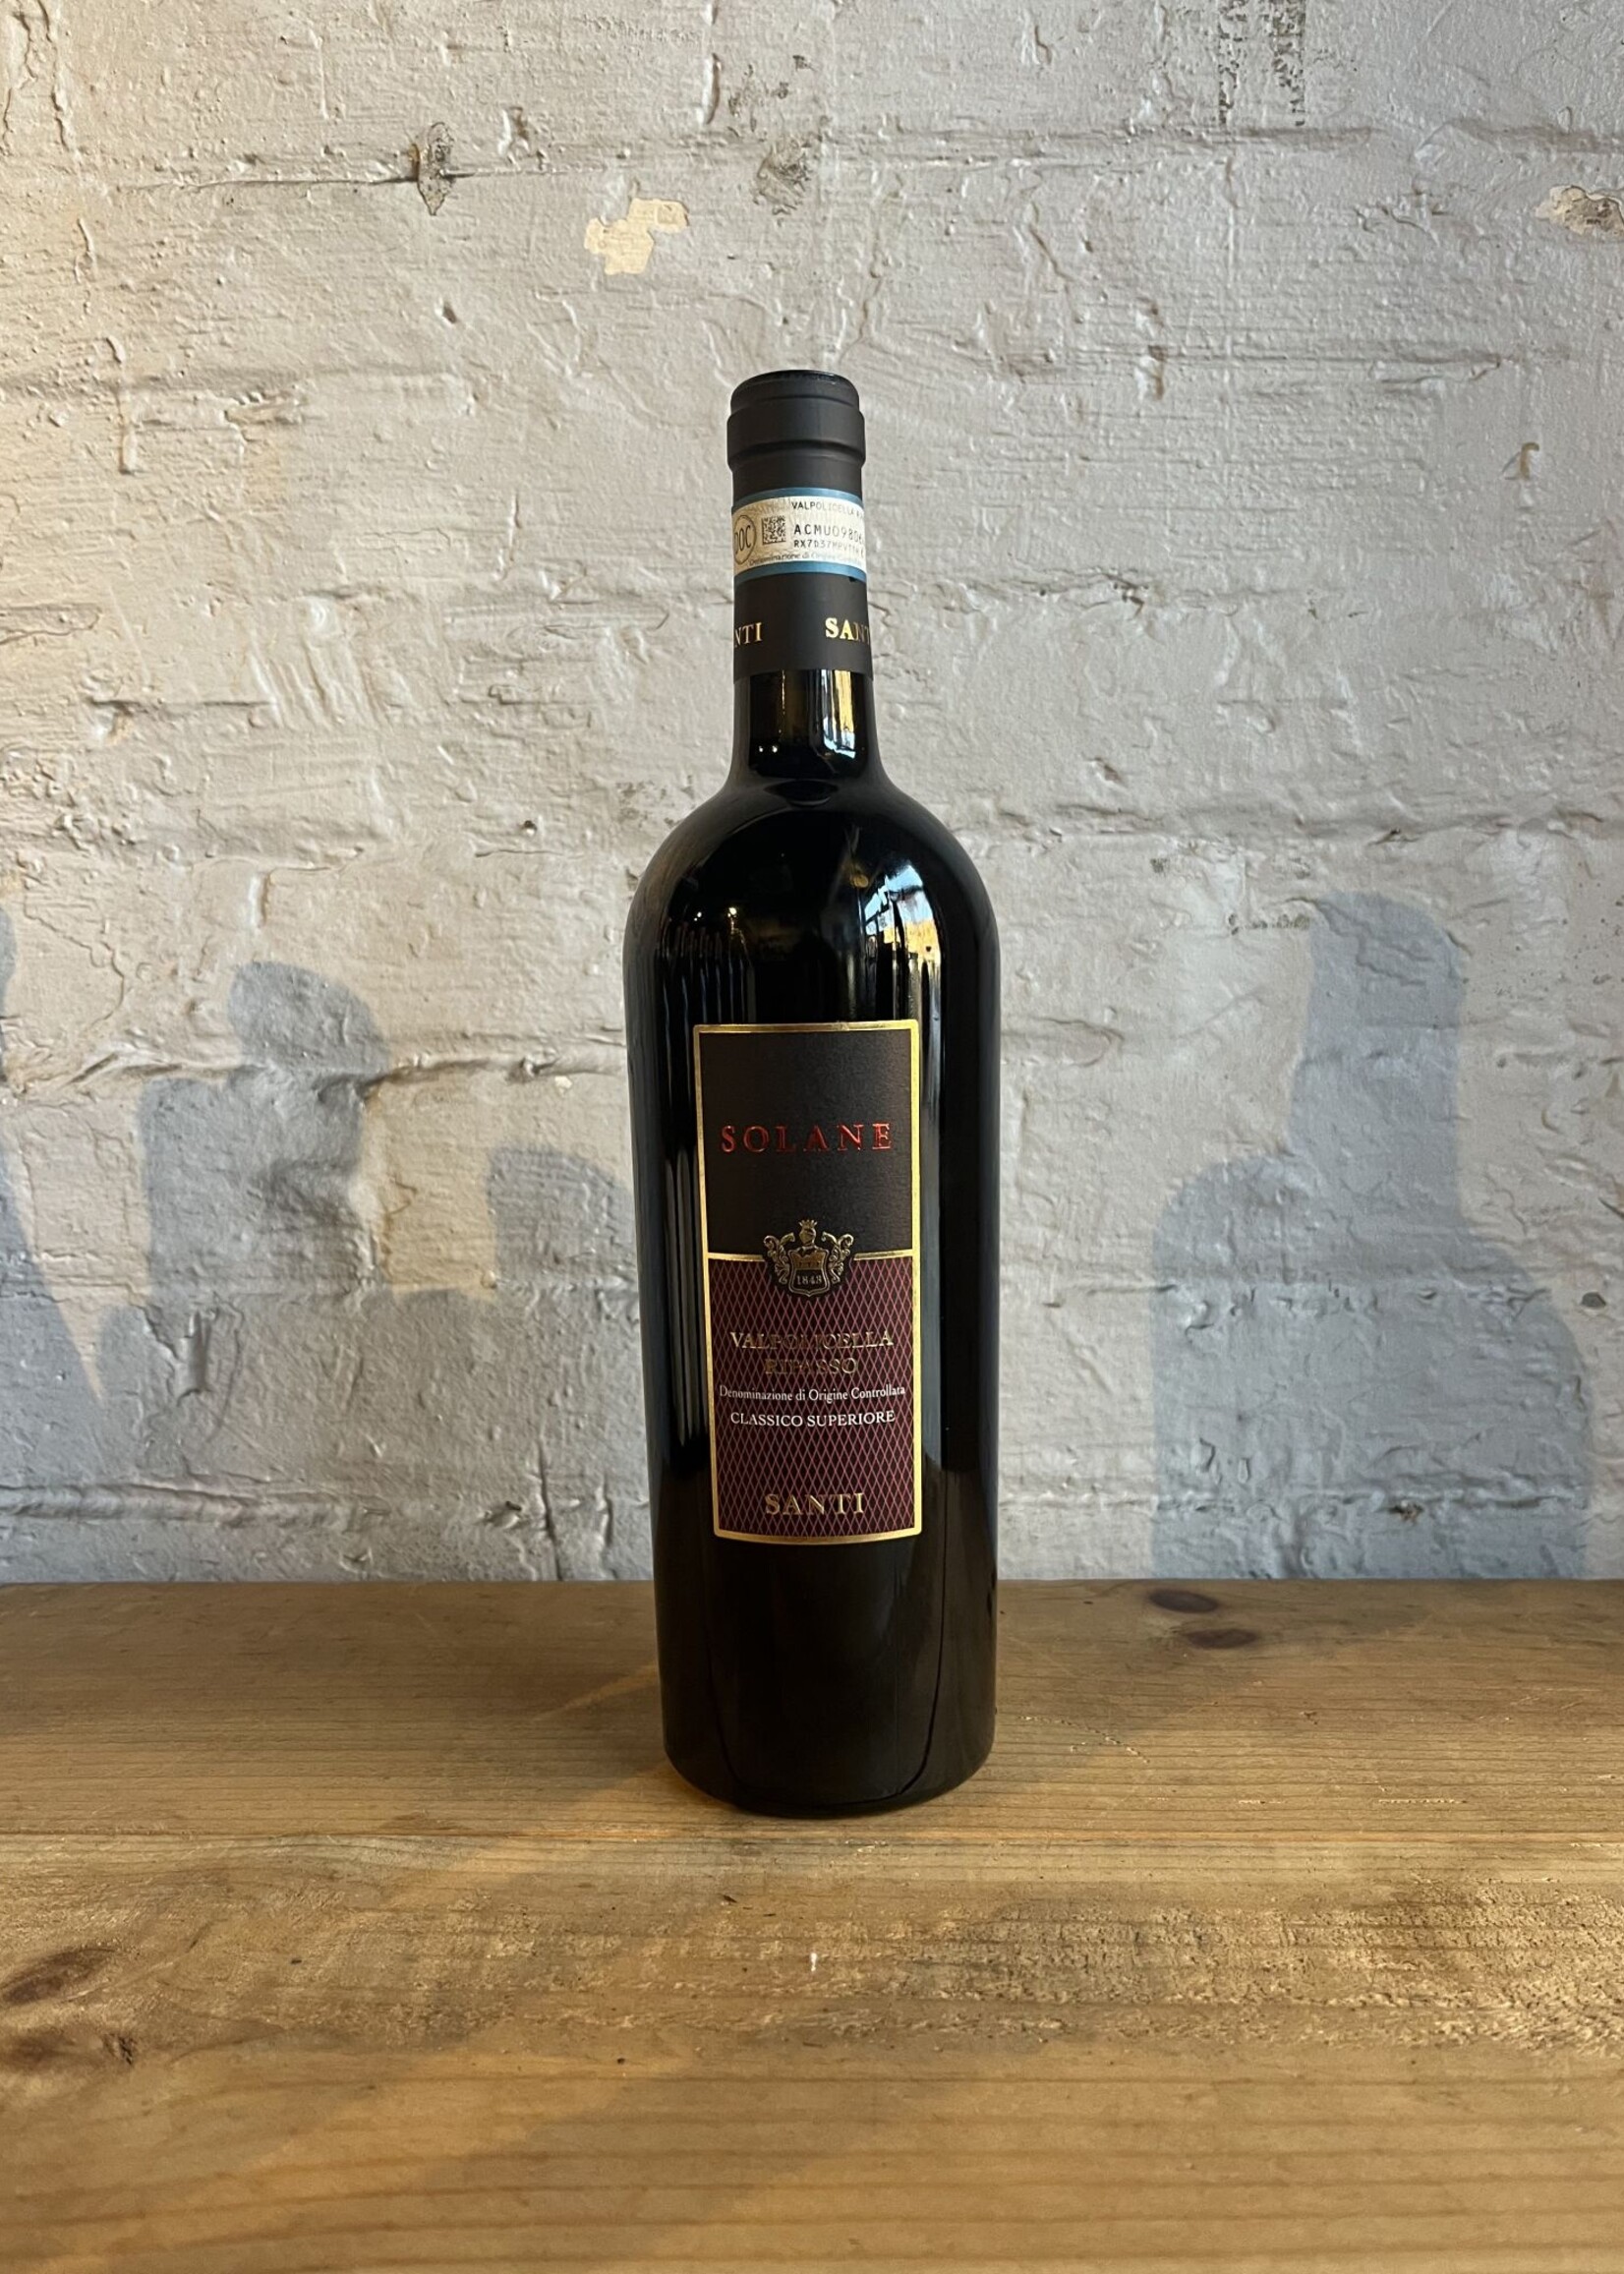 Wine 2019 Santi 'Solane' Valpolicella Classico Ripasso - Veneto, Italy (750ml)